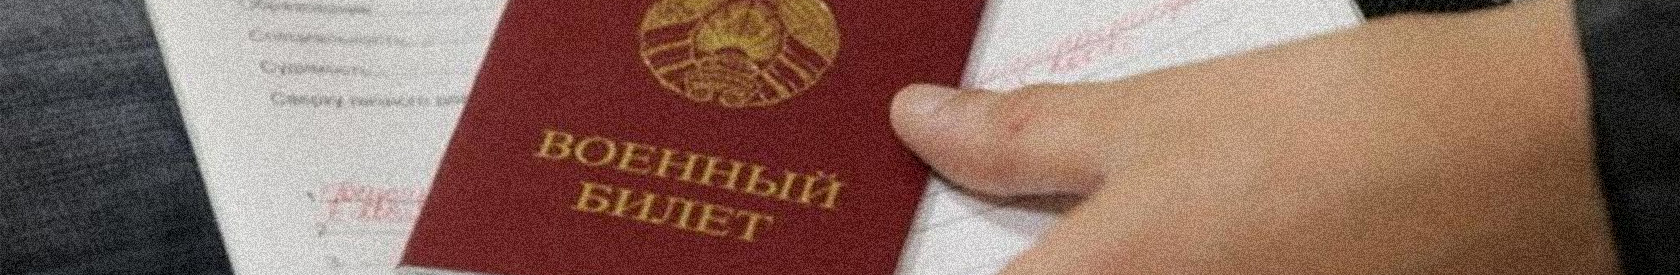 Wehrdienstausweis: Ein Instrument der Diskriminierung in Belarus